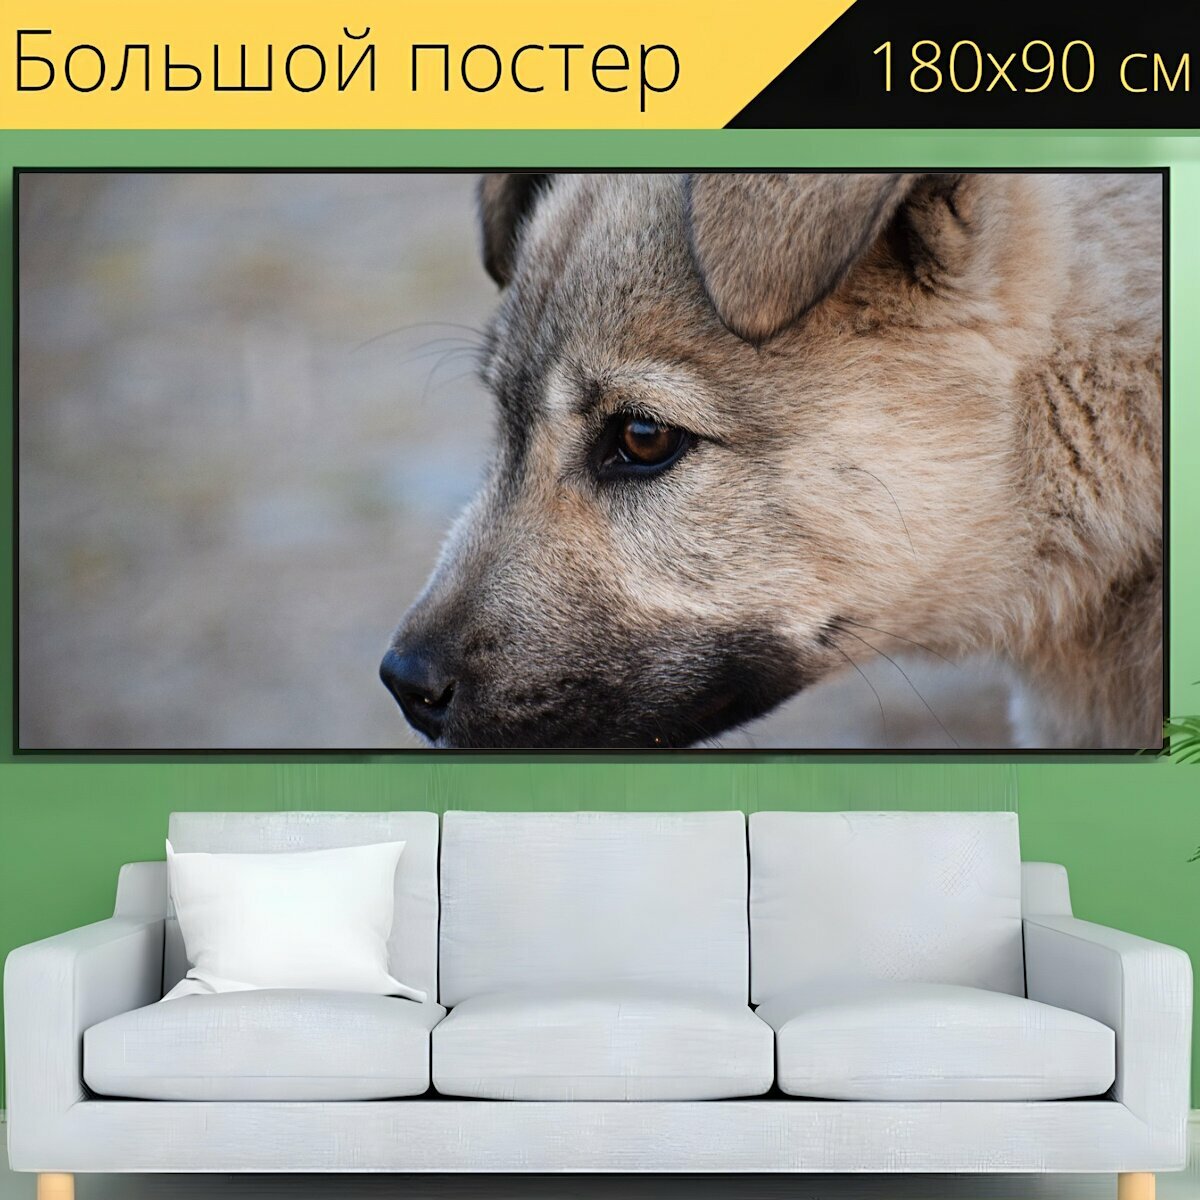 Большой постер "Щенок, собака, домашний питомец" 180 x 90 см. для интерьера